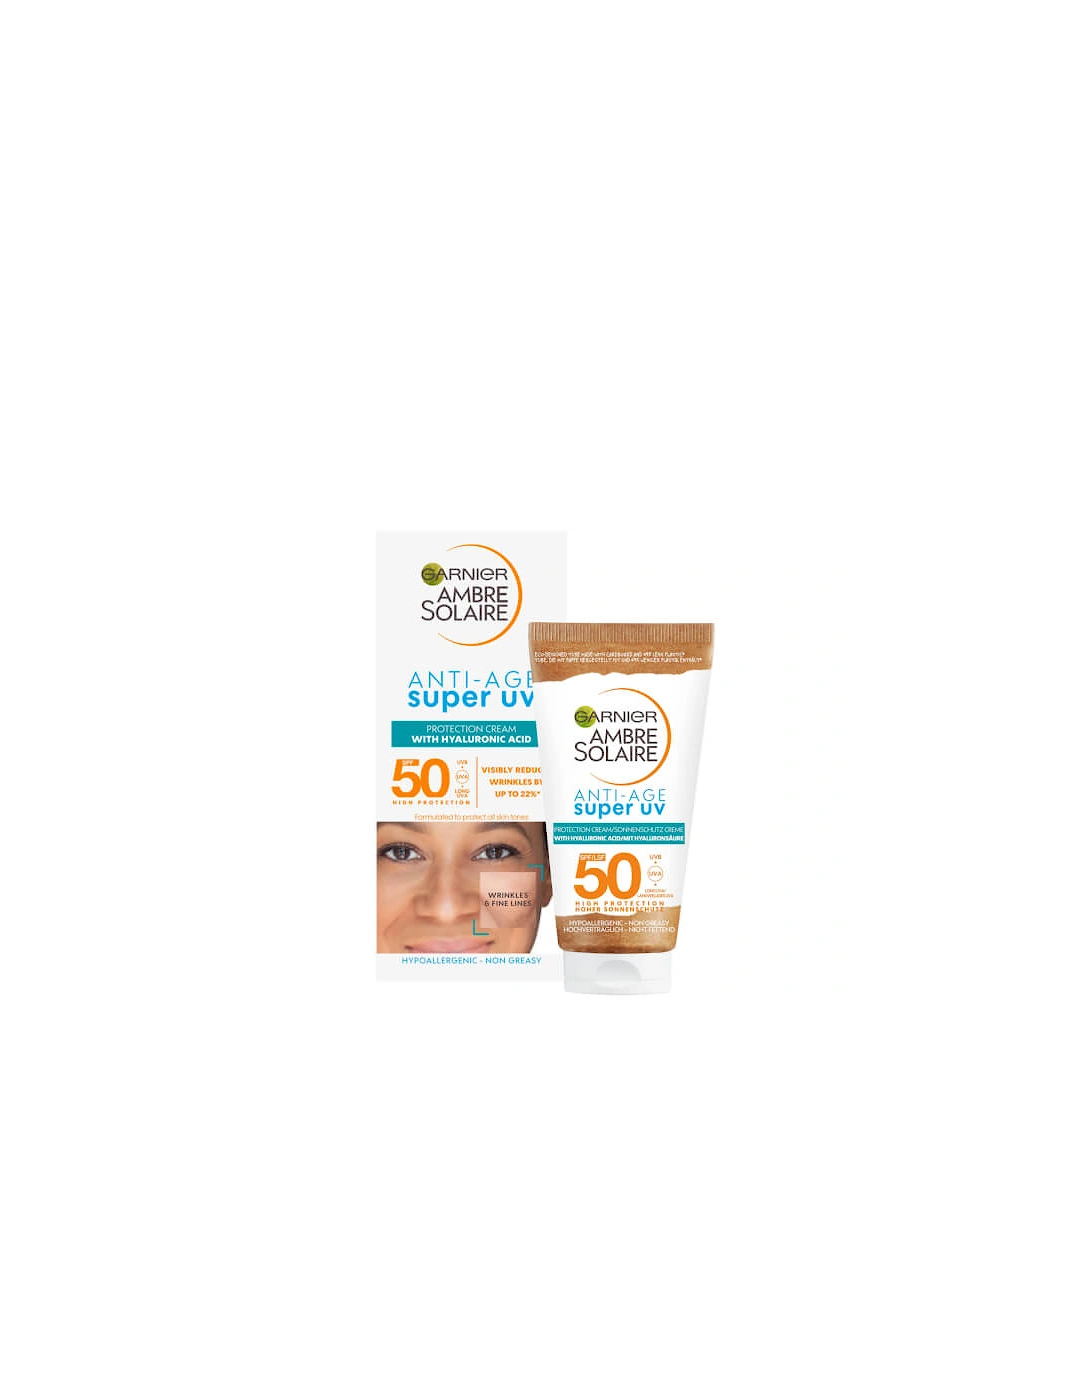 Ambre Solaire Anti-Age Super UV Face Protection SPF50 Cream 50ml, 2 of 1